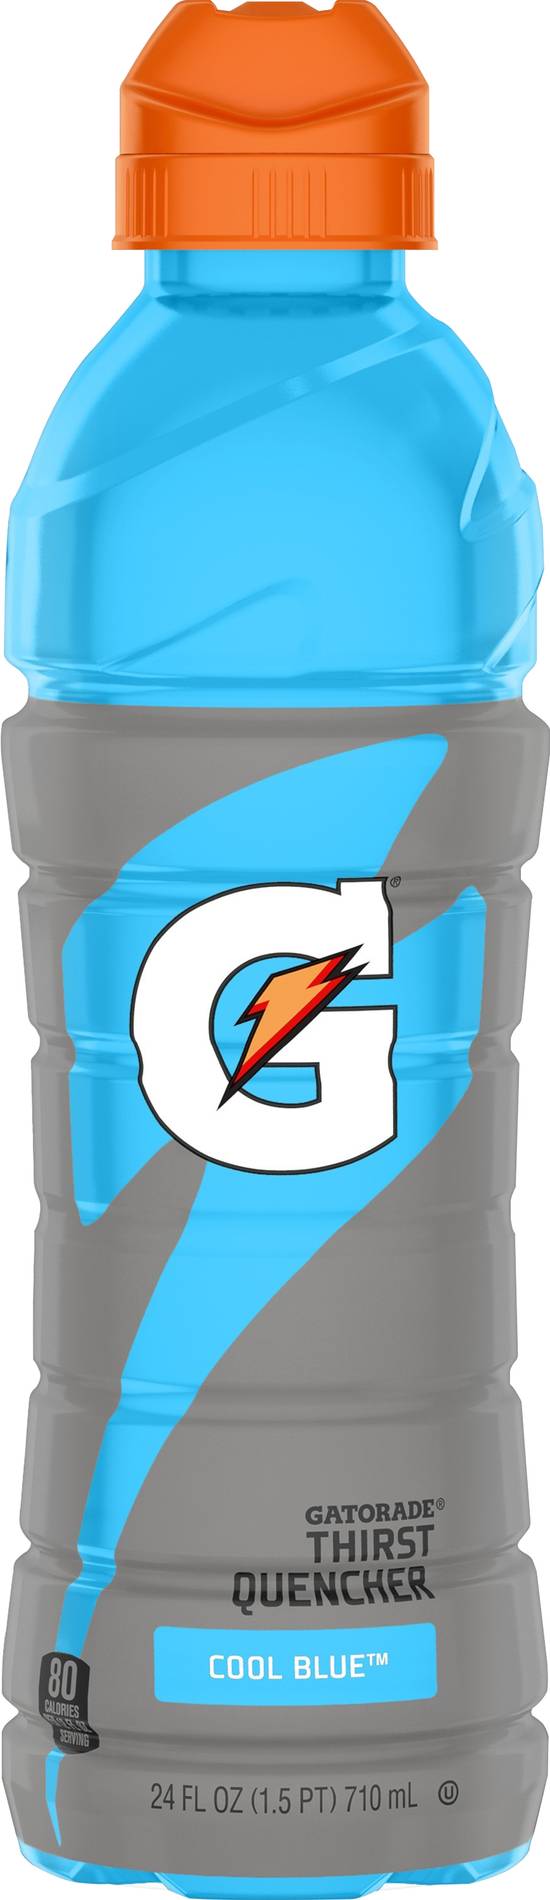 Gatorade Cool Blue Thirst Quencher (24 fl oz)